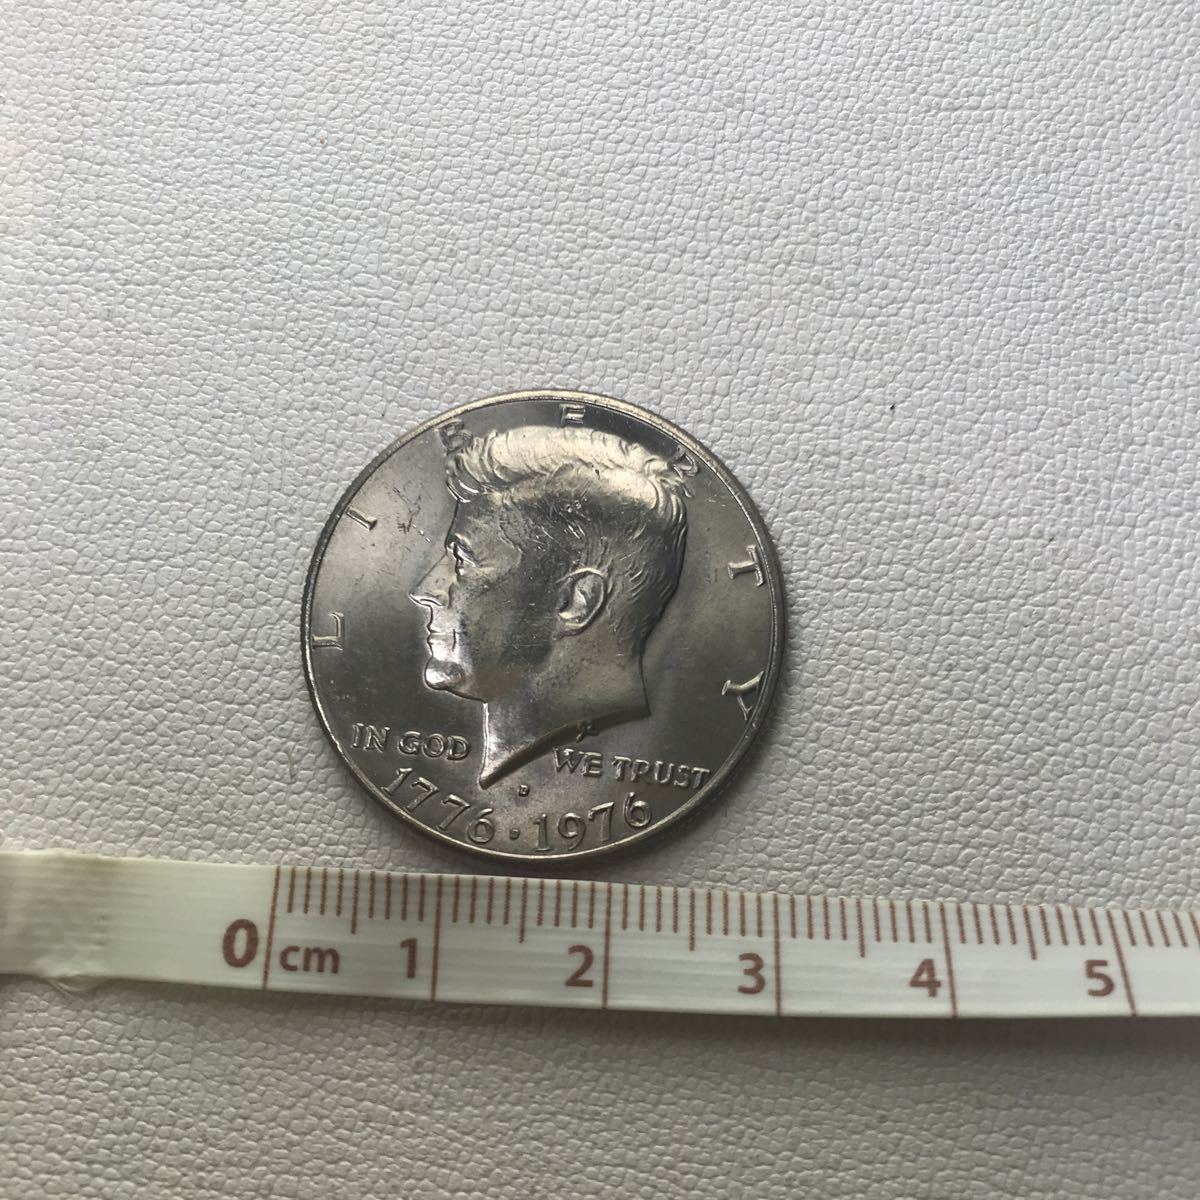 アメリカ合衆国建国0年記念 ケネディ 銀貨 コイン ハーフダラー 50セント アンティークコイン1776 1976年 コレクション 在庫限り